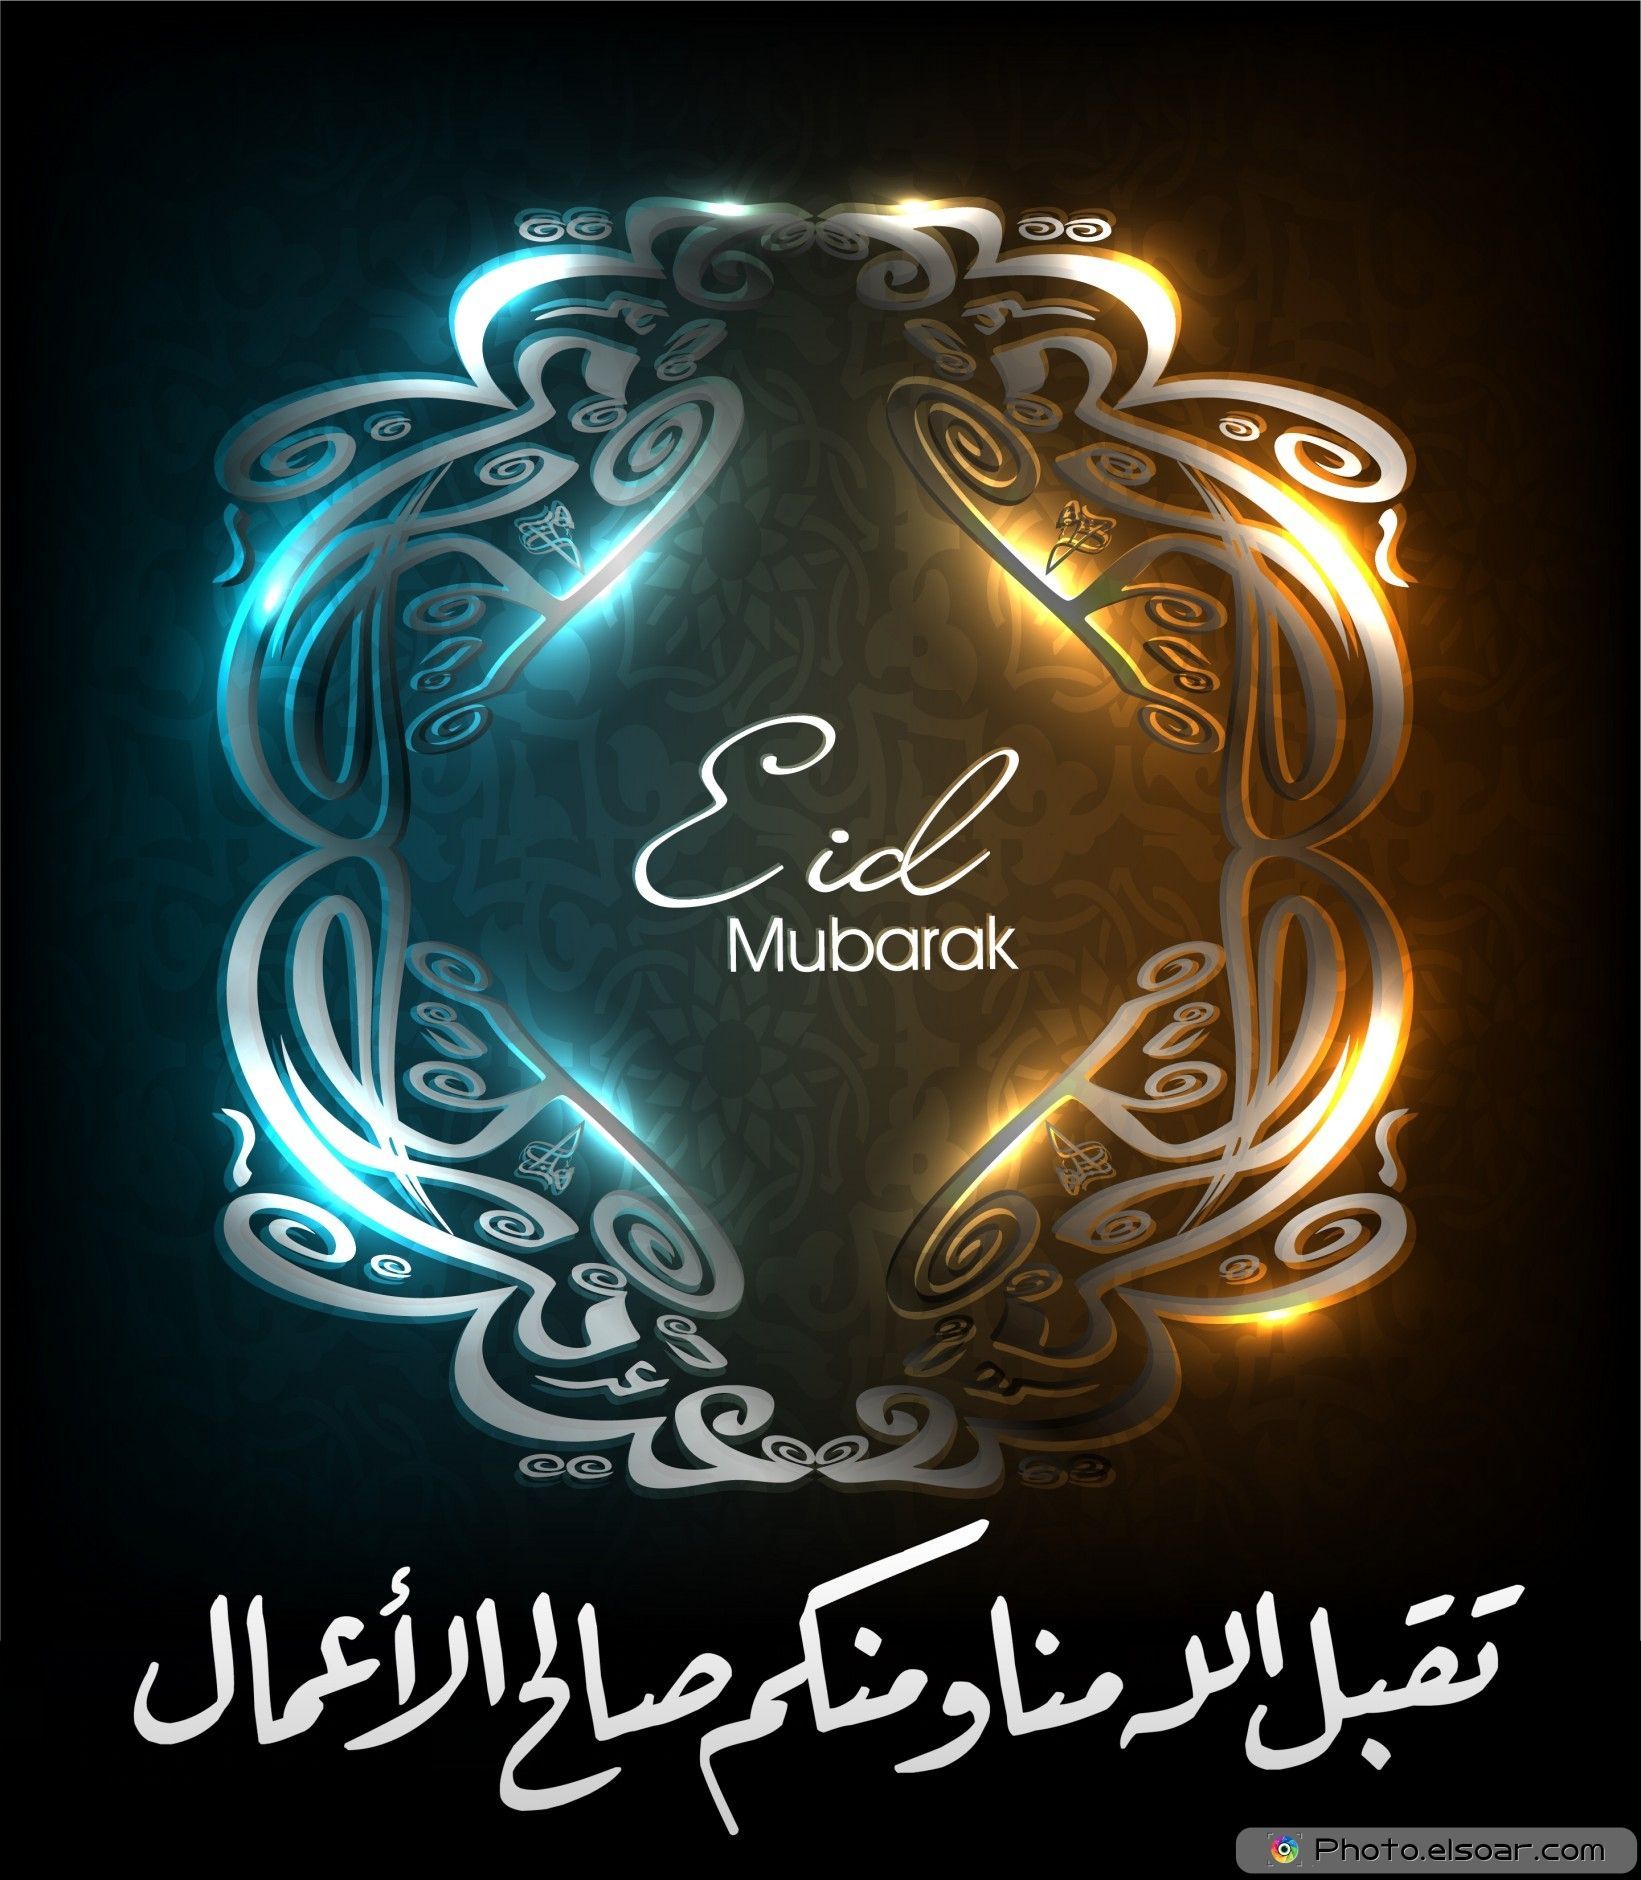 Best & Free Download Eid Mubarak Image 2014. Amazing Photo